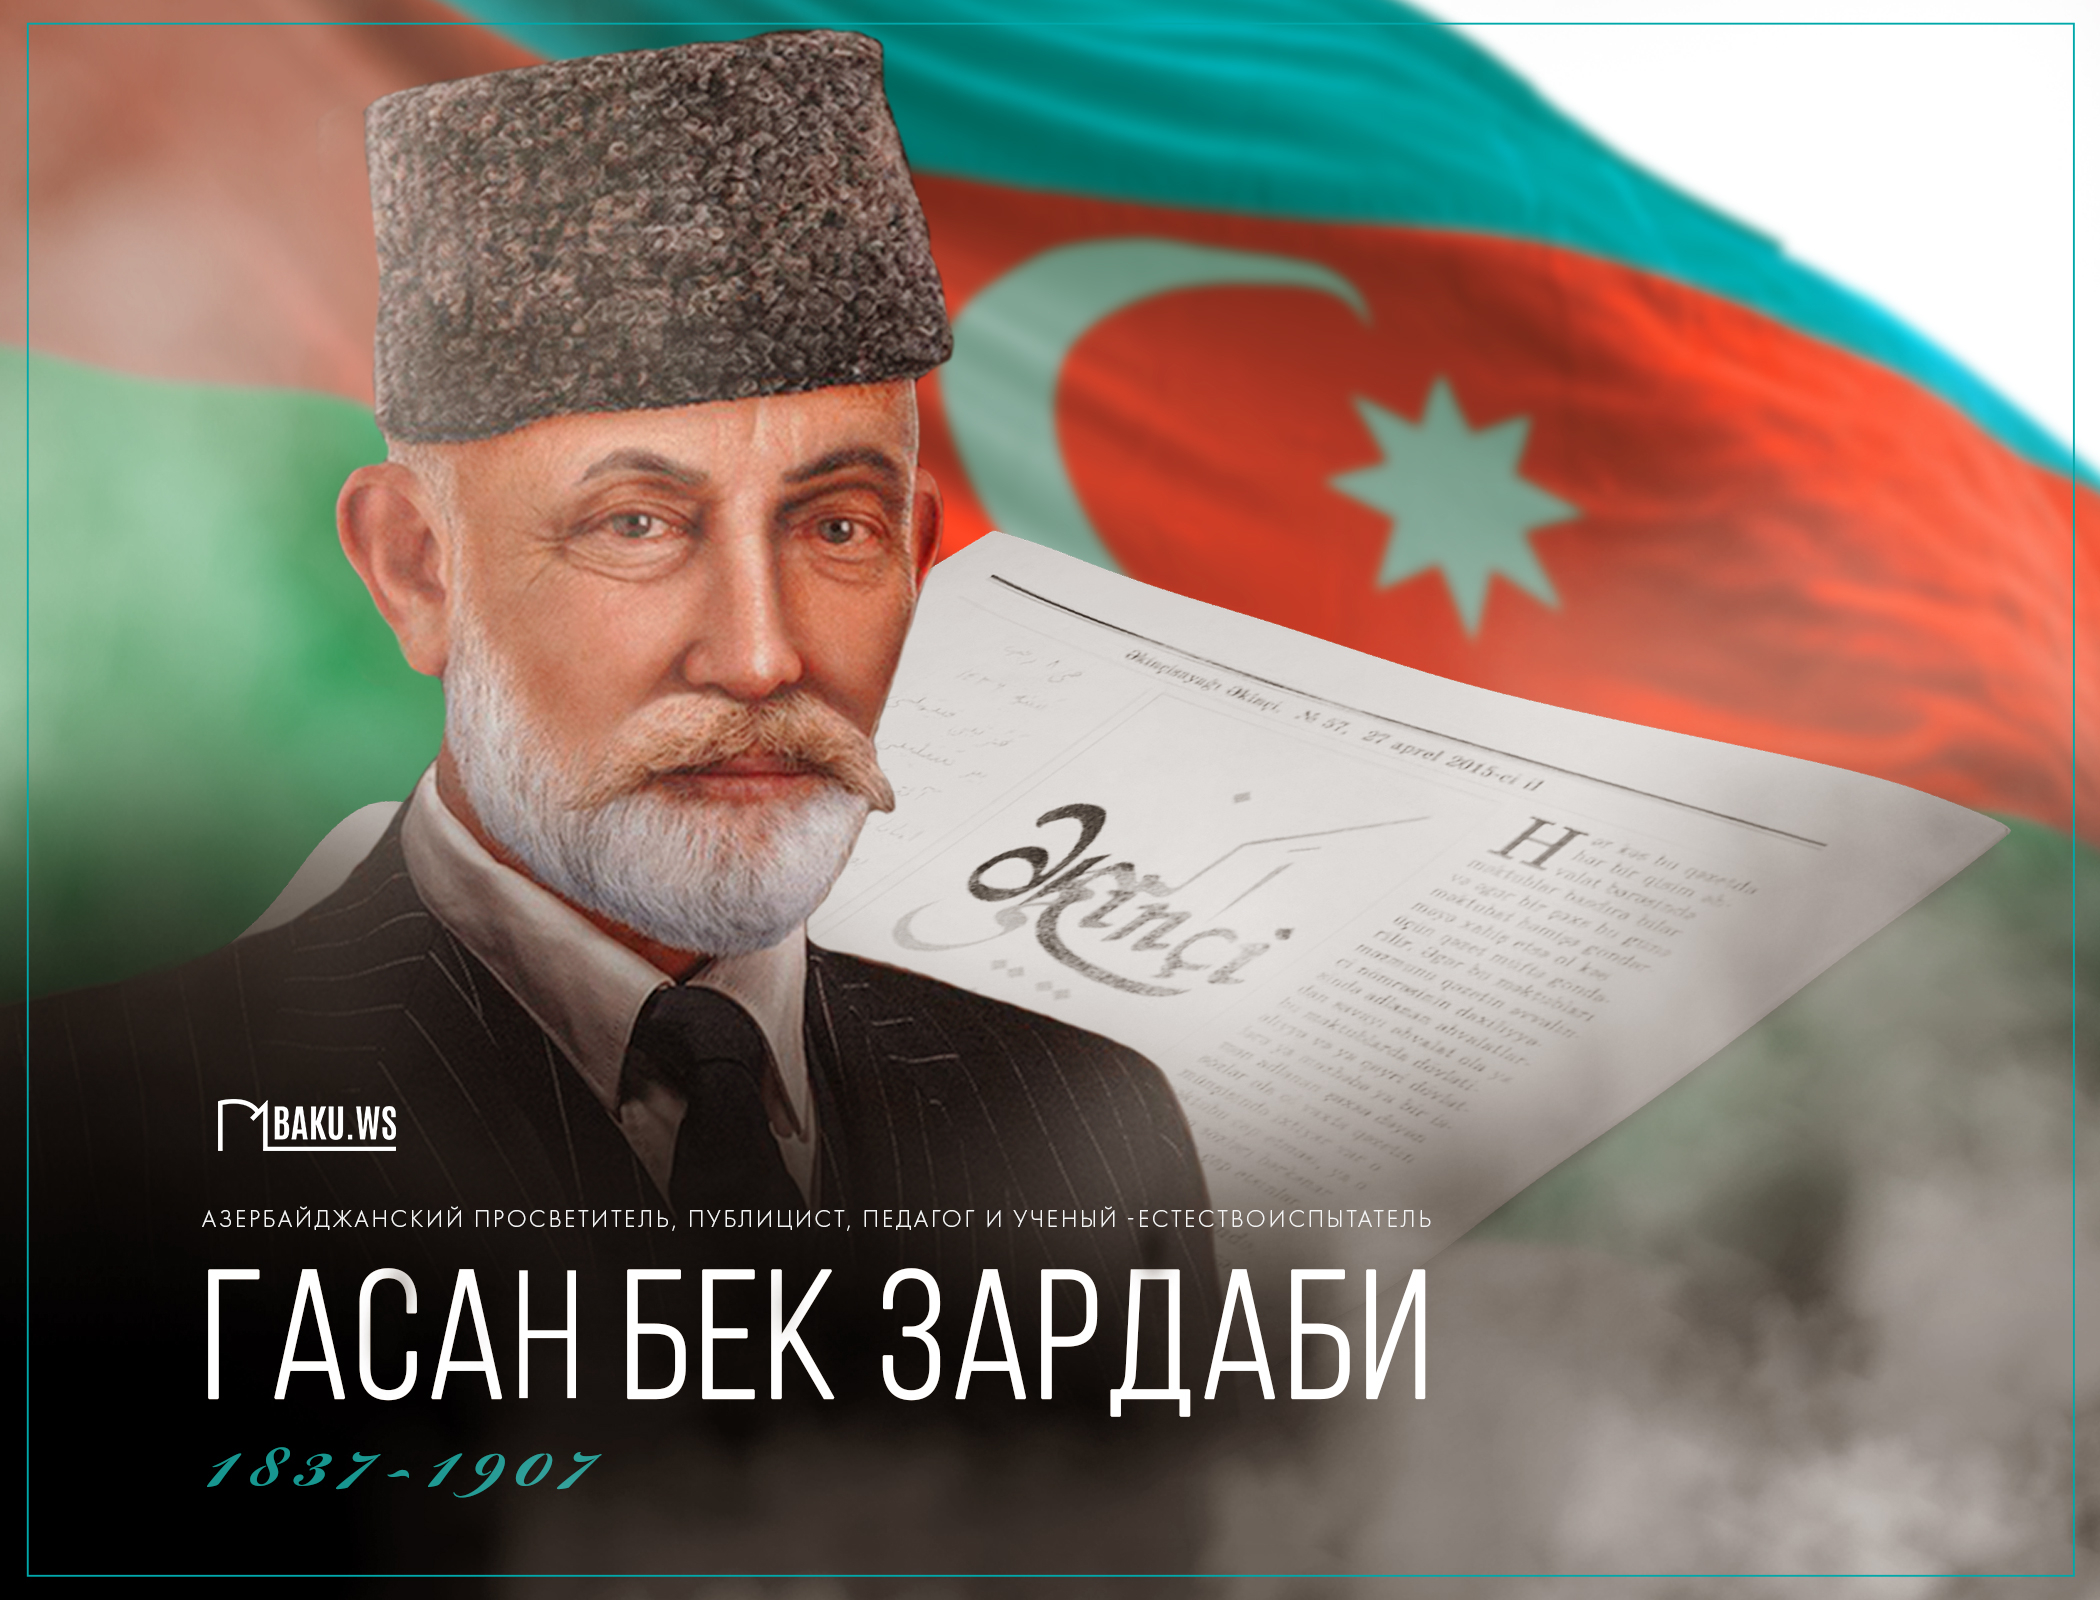 Сегодня день рождения основателя азербайджанской национальной прессы Гасан бека Зардаби